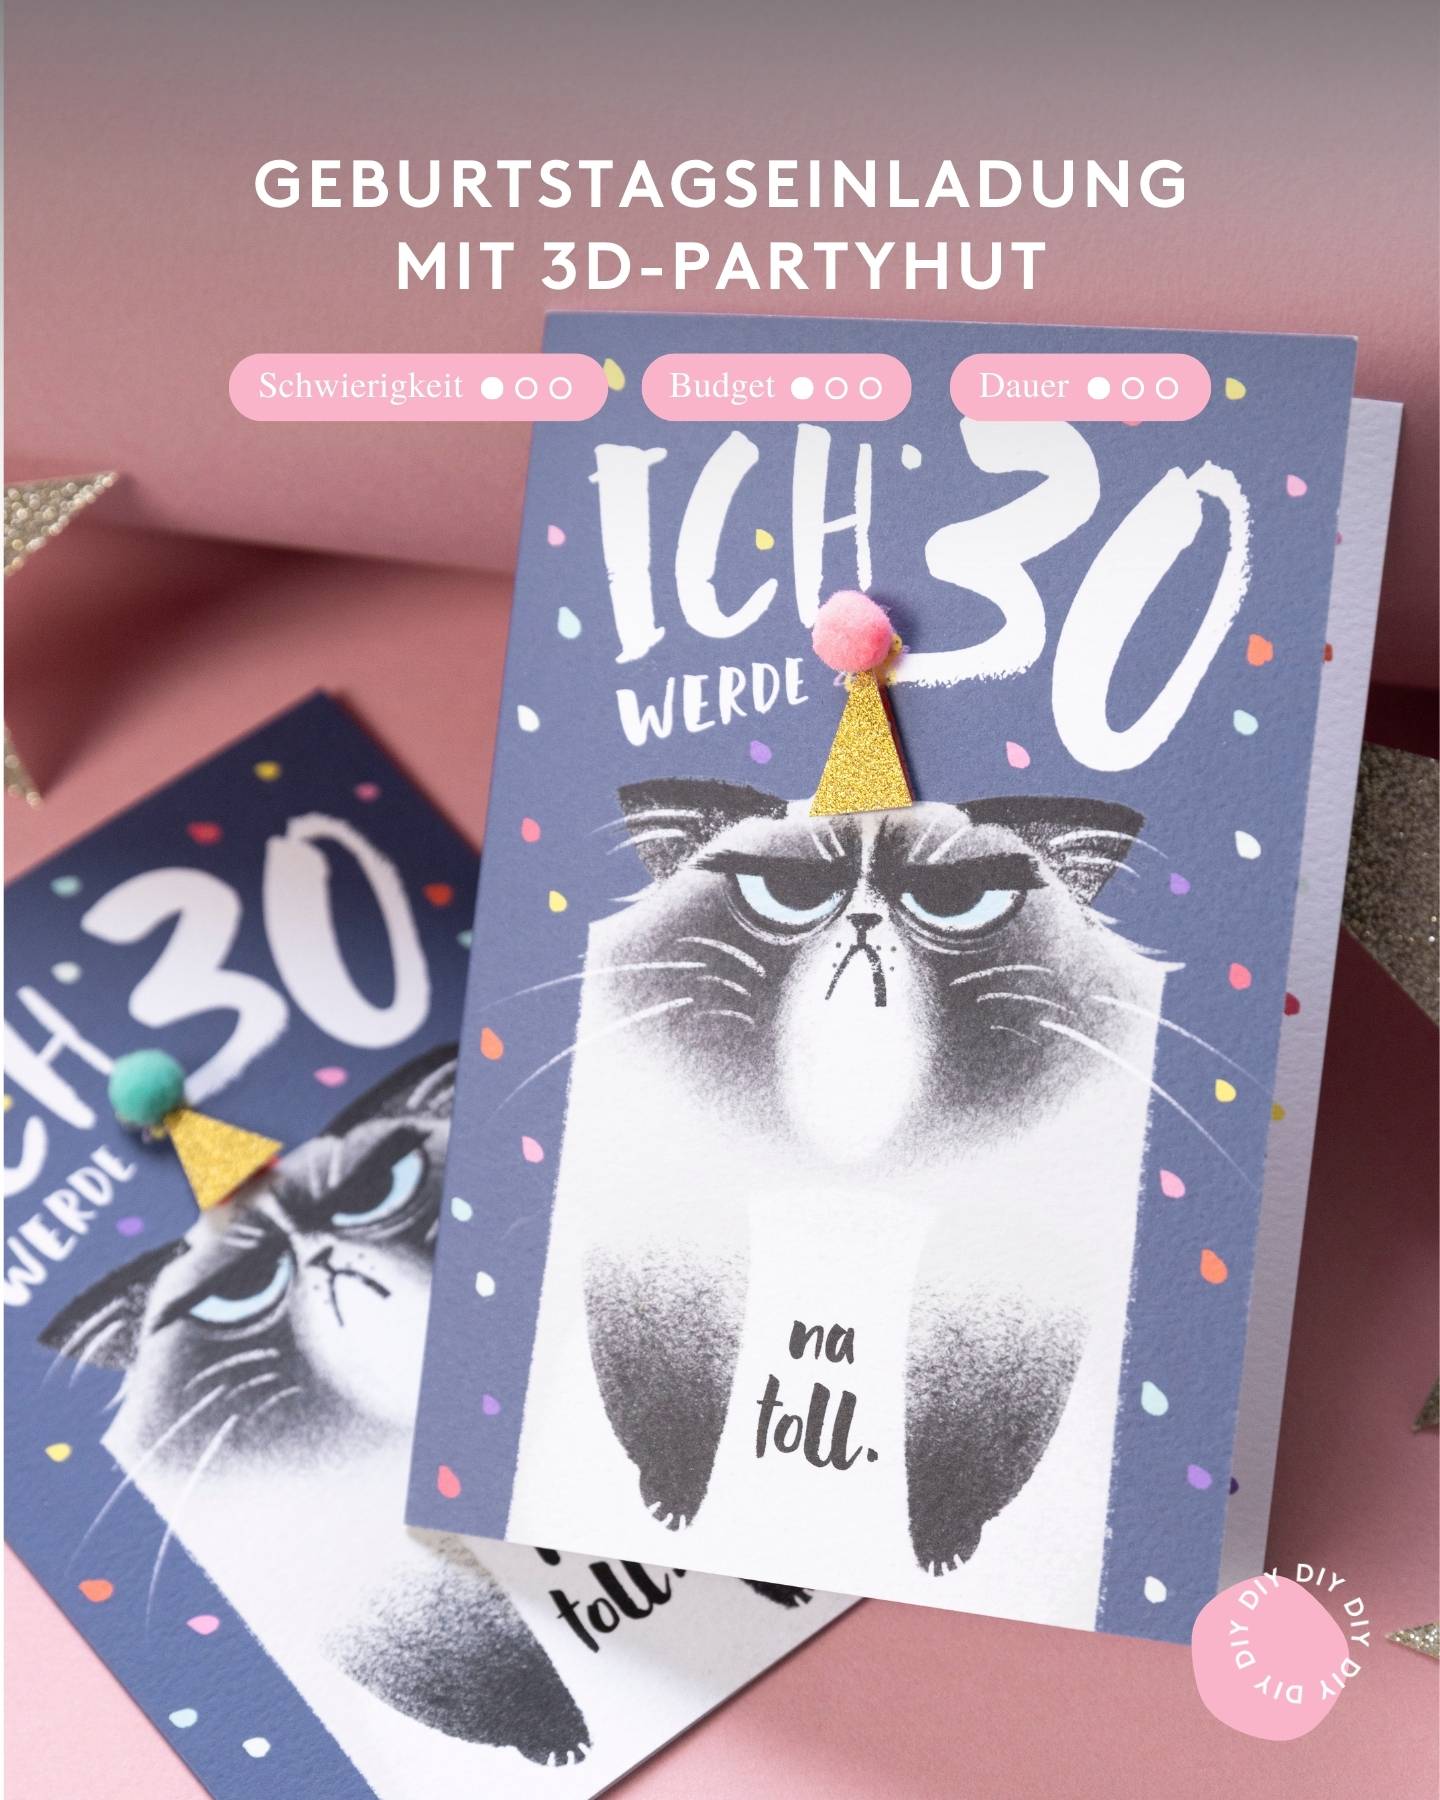 Geburtstagseinladung selber machen. Einladungskarte mit 3D Partyhut